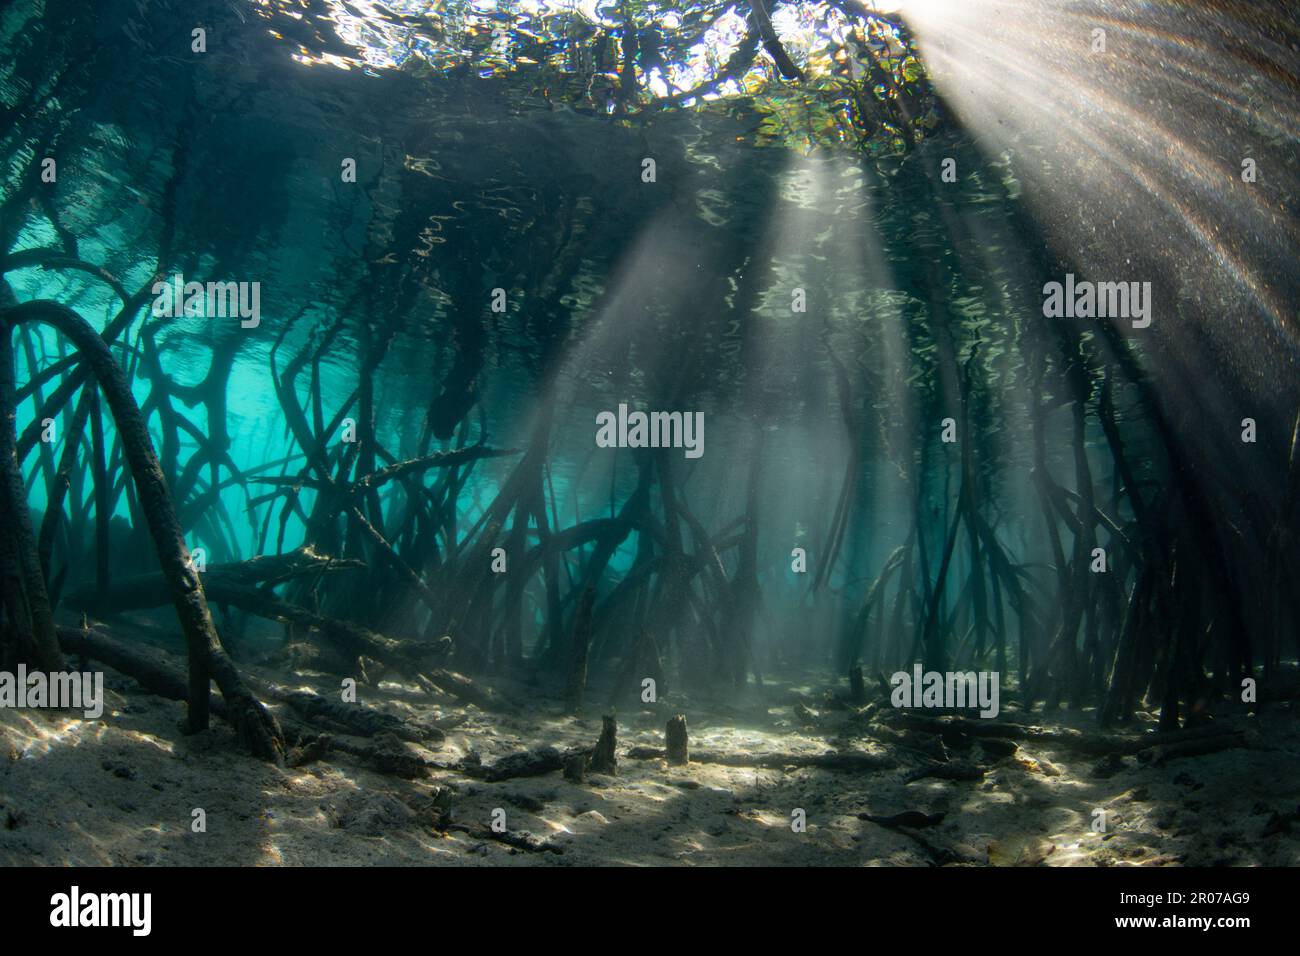 La luce del sole filtra sott'acqua nelle ombre di una foresta di mangrovie scure che cresce in Raja Ampat, Indonesia. Le mangrovie sono habitat marini vitali. Foto Stock